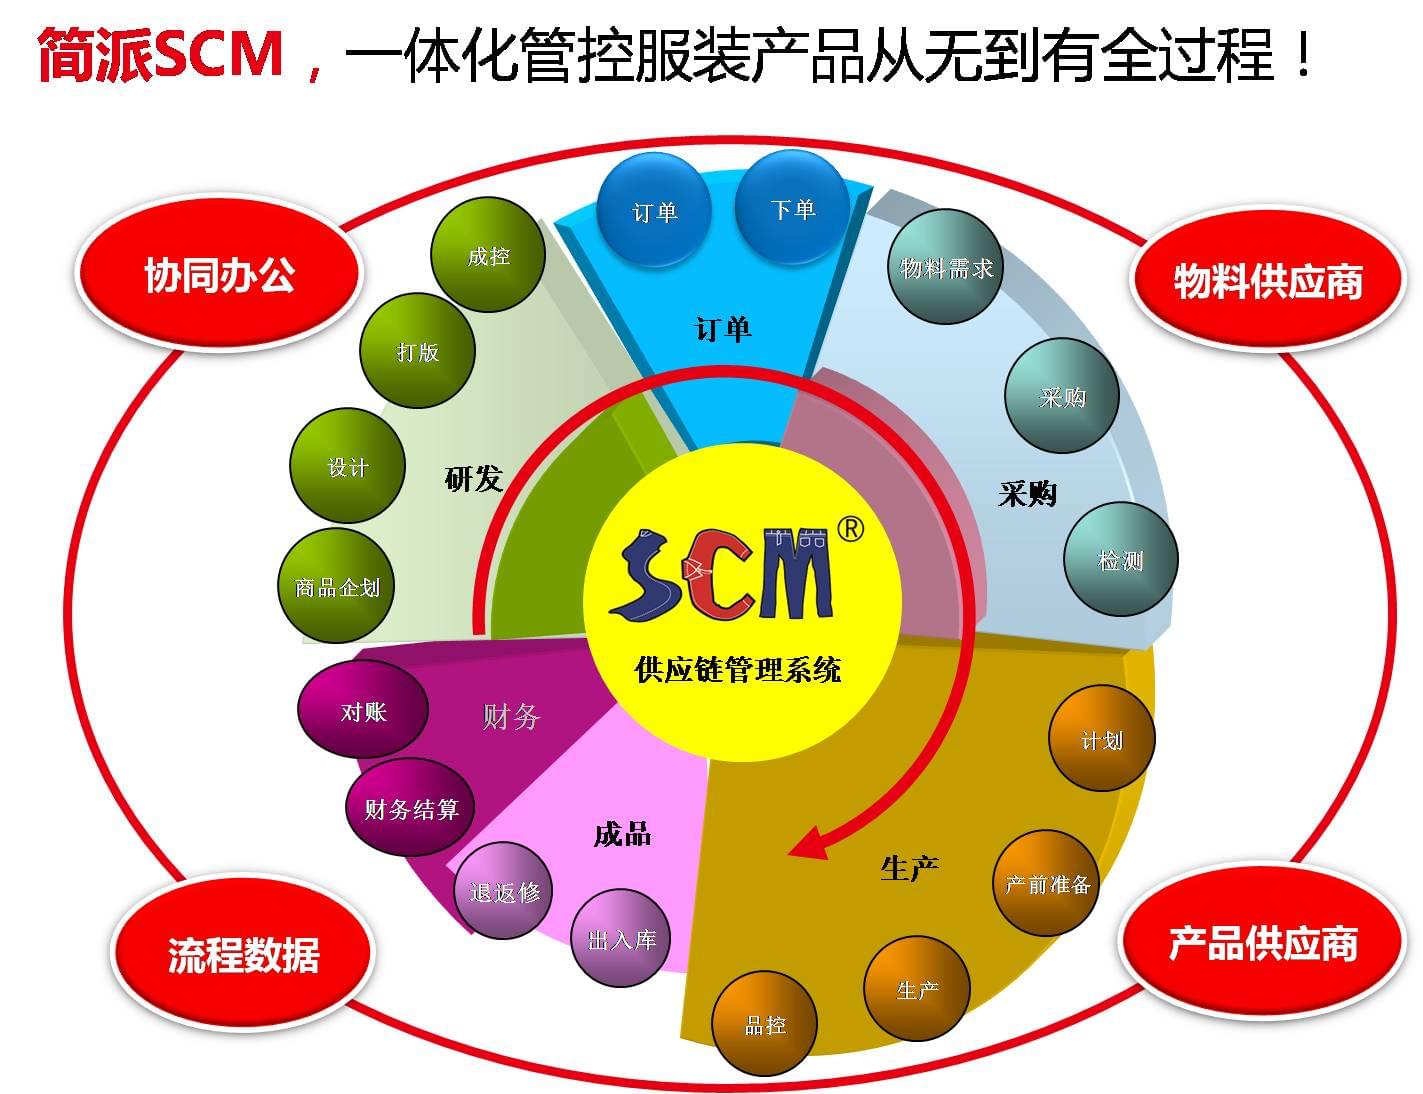 中哲文墨,简派SCM,服装供应链管理系统,SCM供应链管理系统,广州简派软件科技有限公司